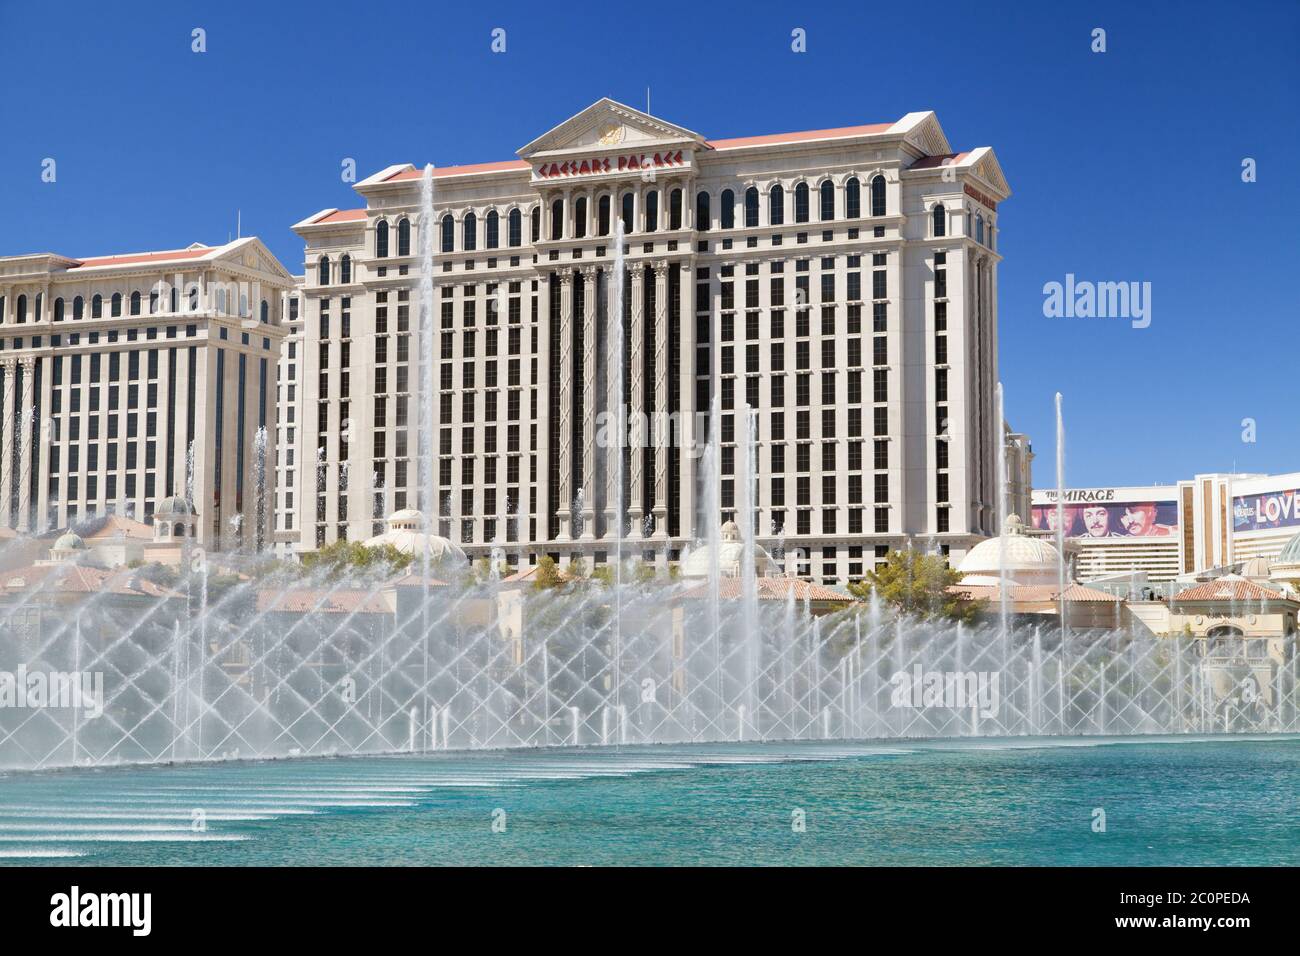 Las Vegas, Nevada - 30 août 2019 : Caesars Palace et les Fontaines du Bellagio à Las Vegas, Nevada, États-Unis. Banque D'Images